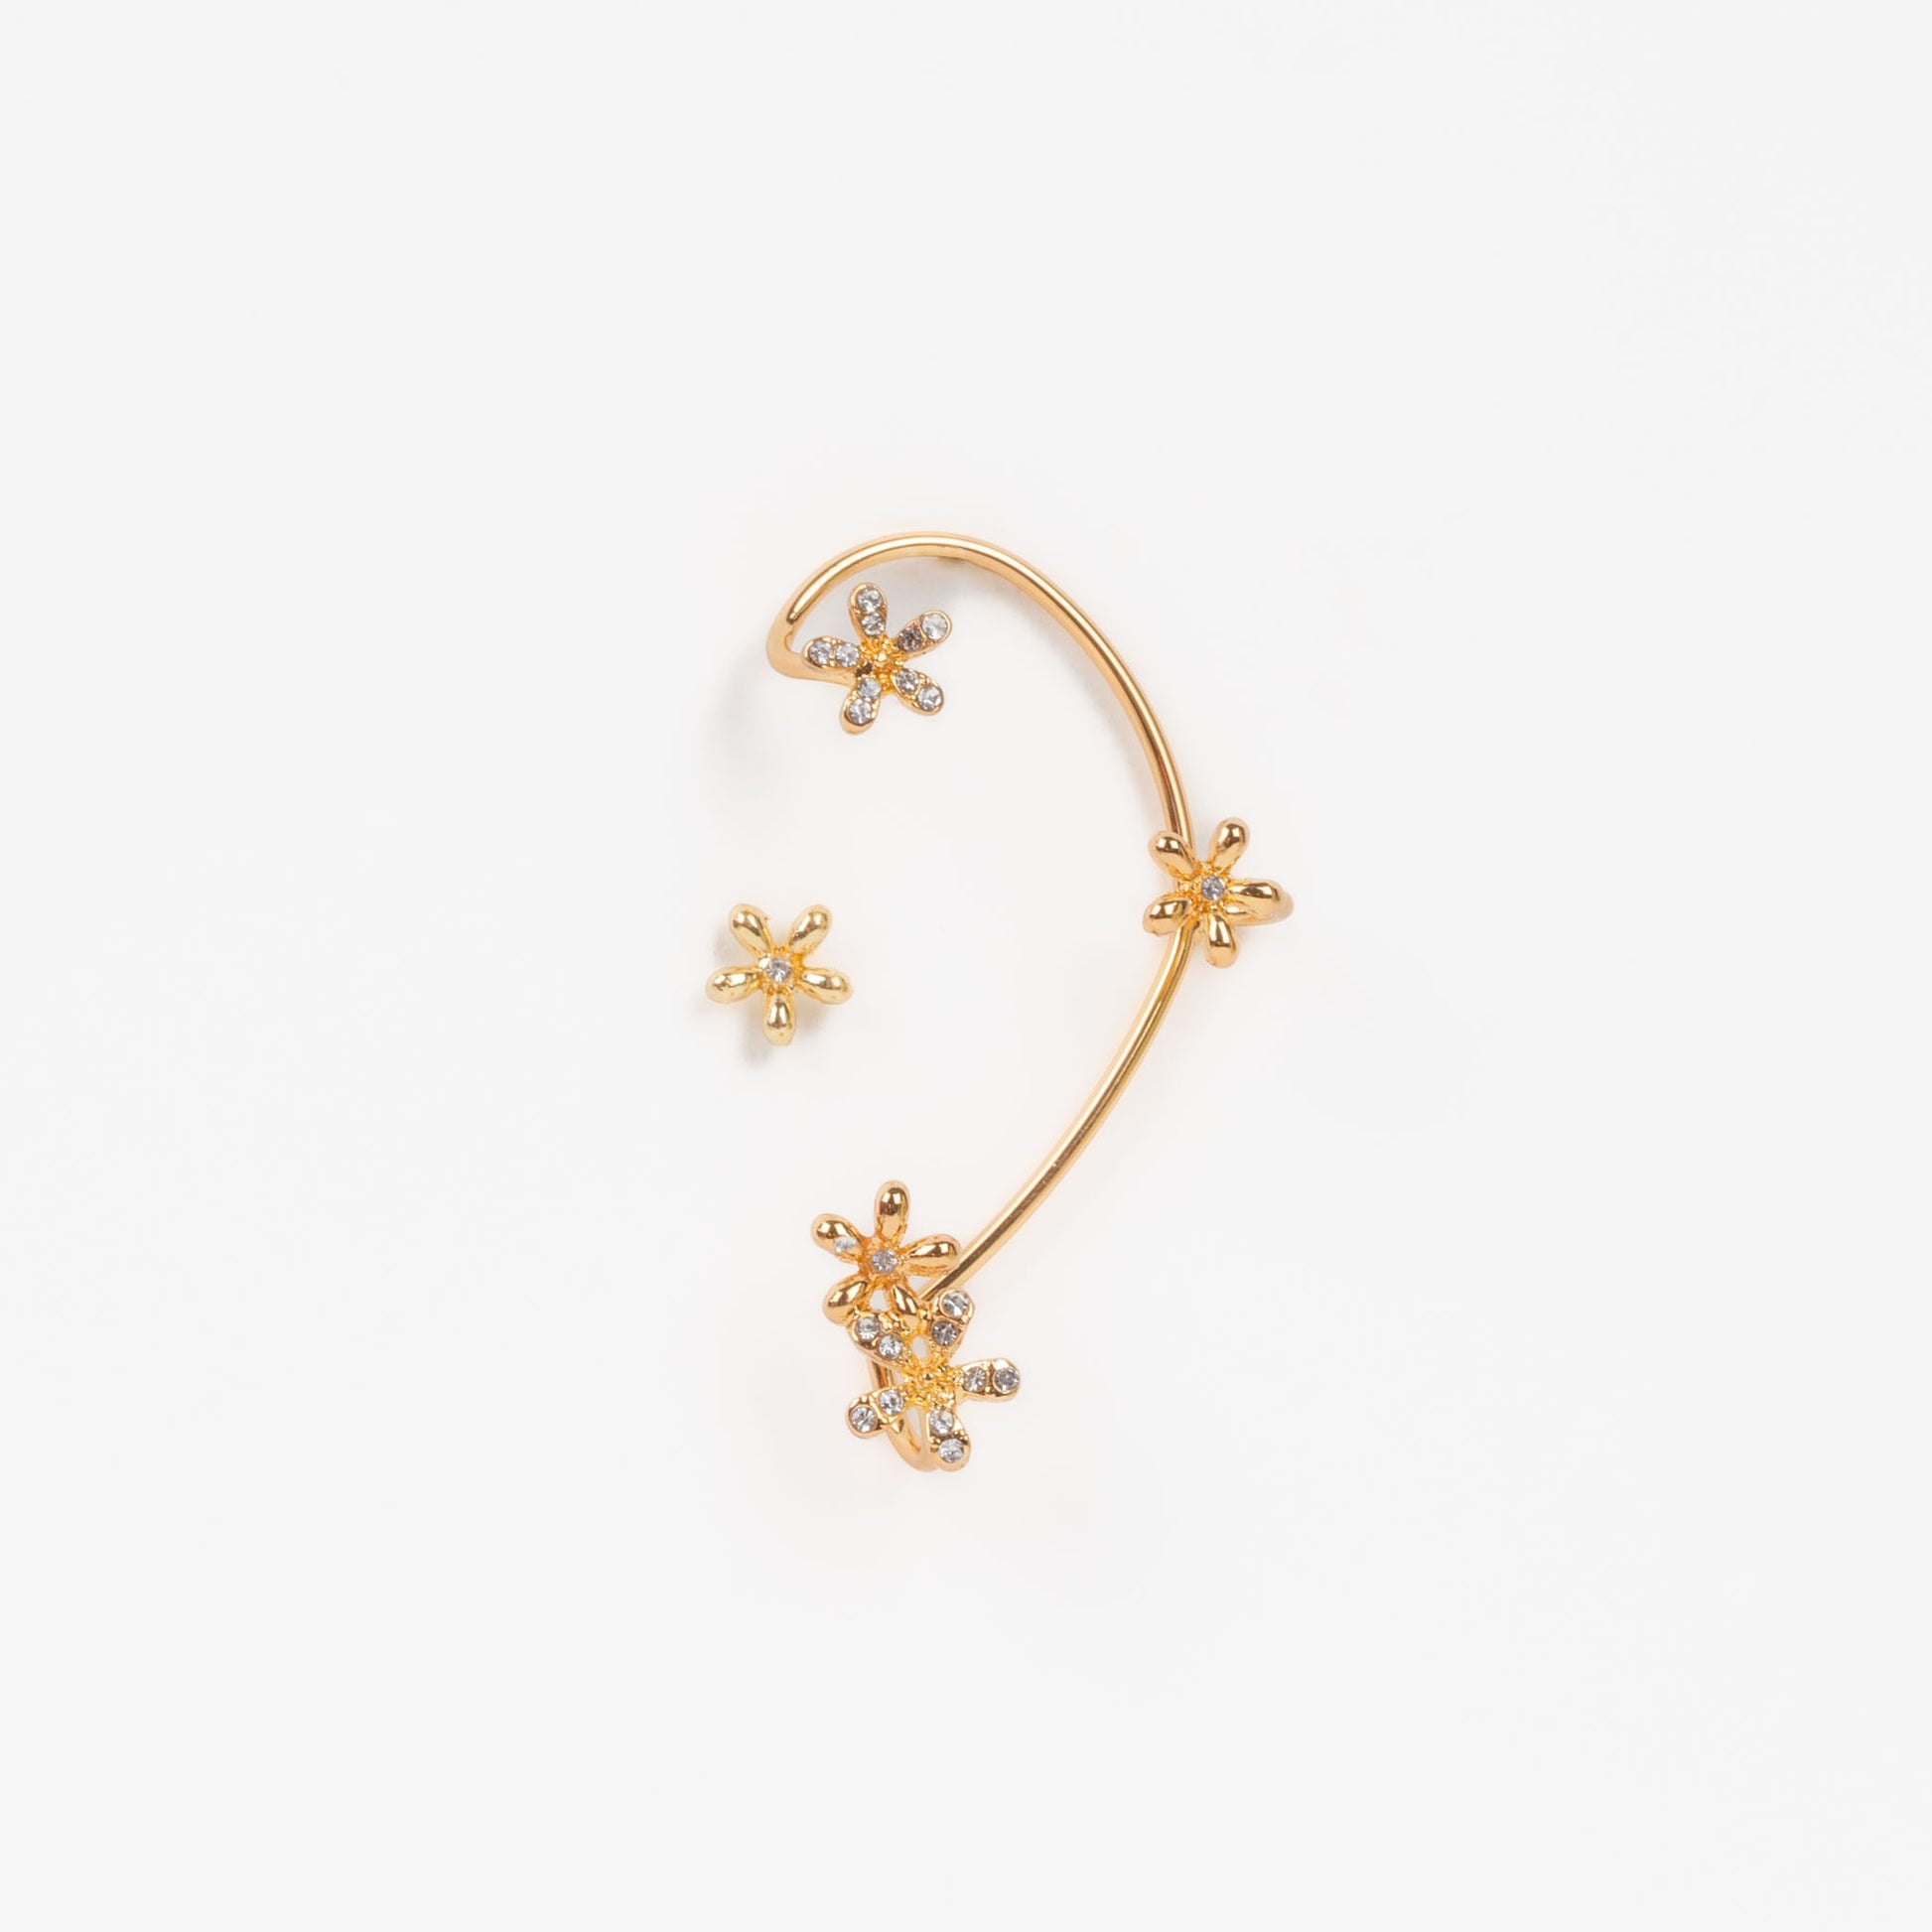 Cercel ear cuff cu ornamente în formă de floare, set 2 buc - Auriu delicat